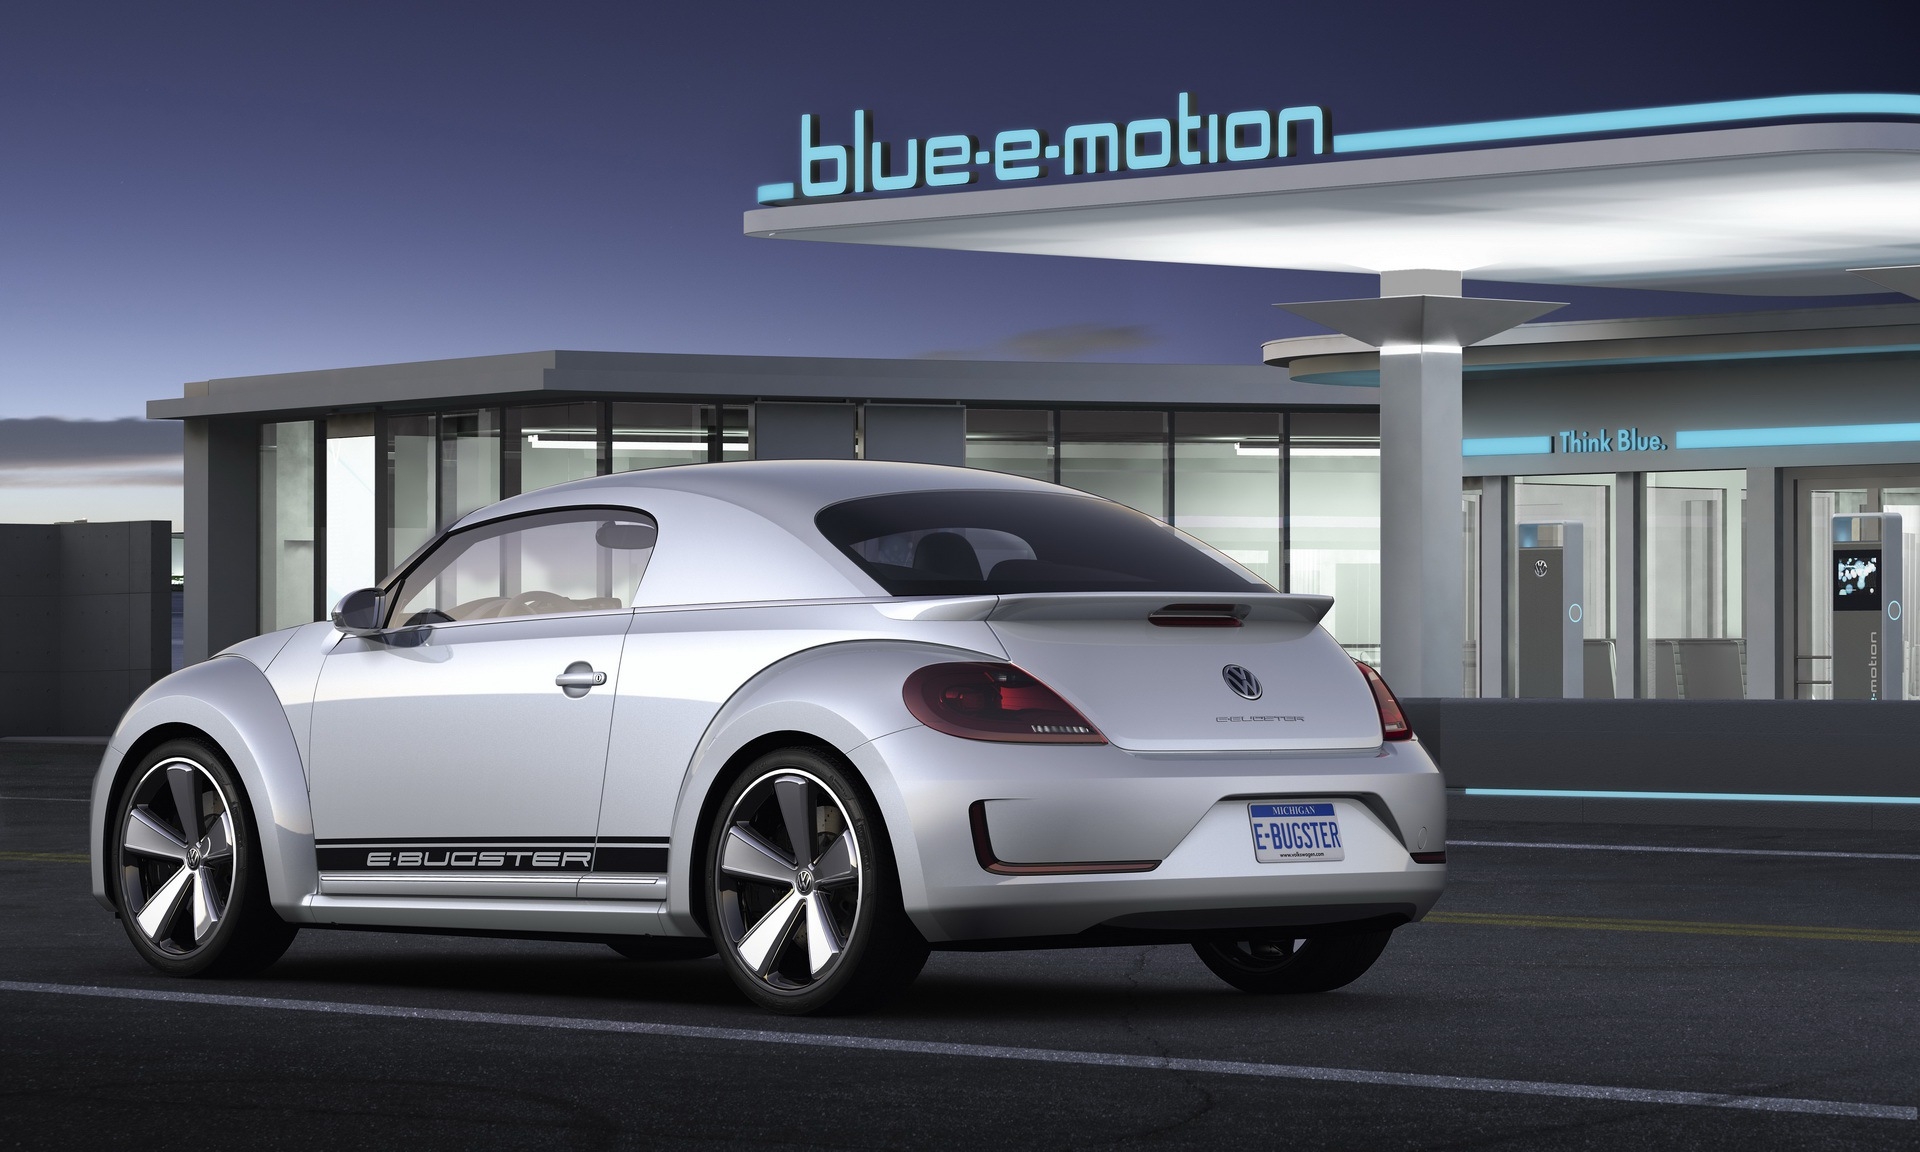 ตำนานอาจกลับมา! Volkswagen จดทะเบียน e-Beetle กับกรมทรัพย์สินทางปัญญา